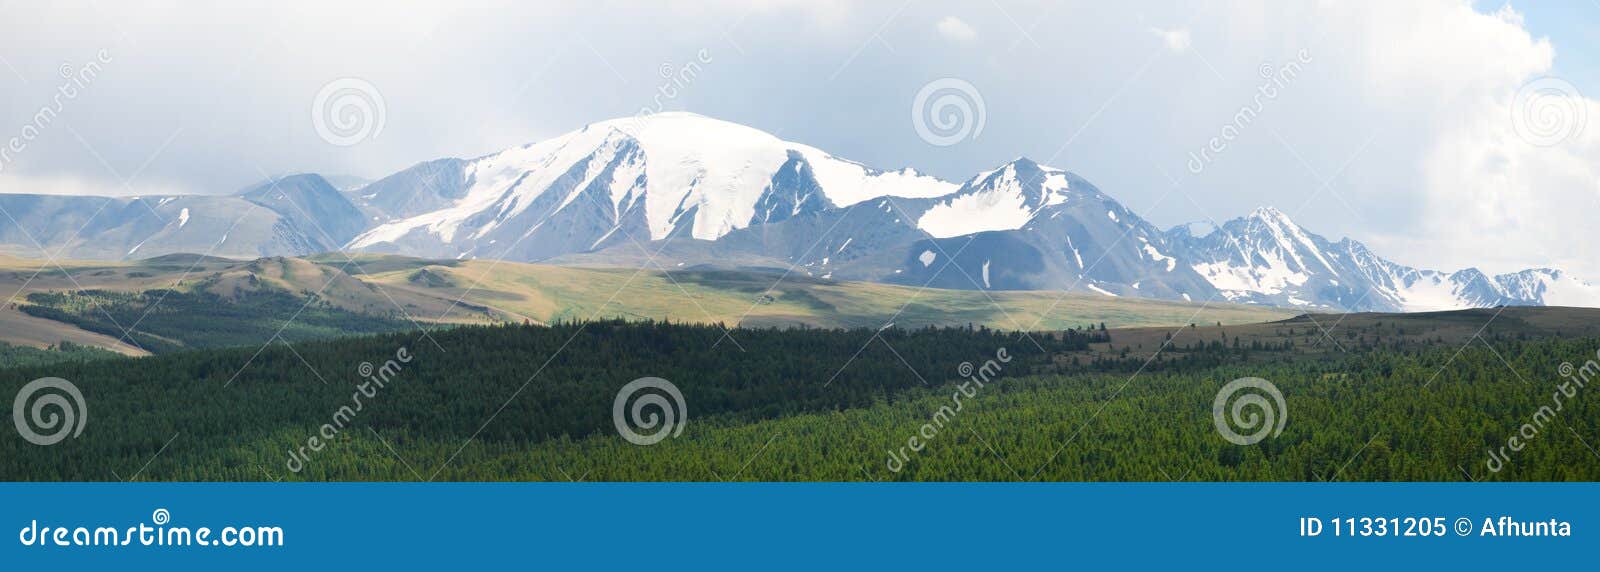 μέγιστος χιονώδης βουνών. πράσινο μέγιστο χιονώδες taiga βουνών